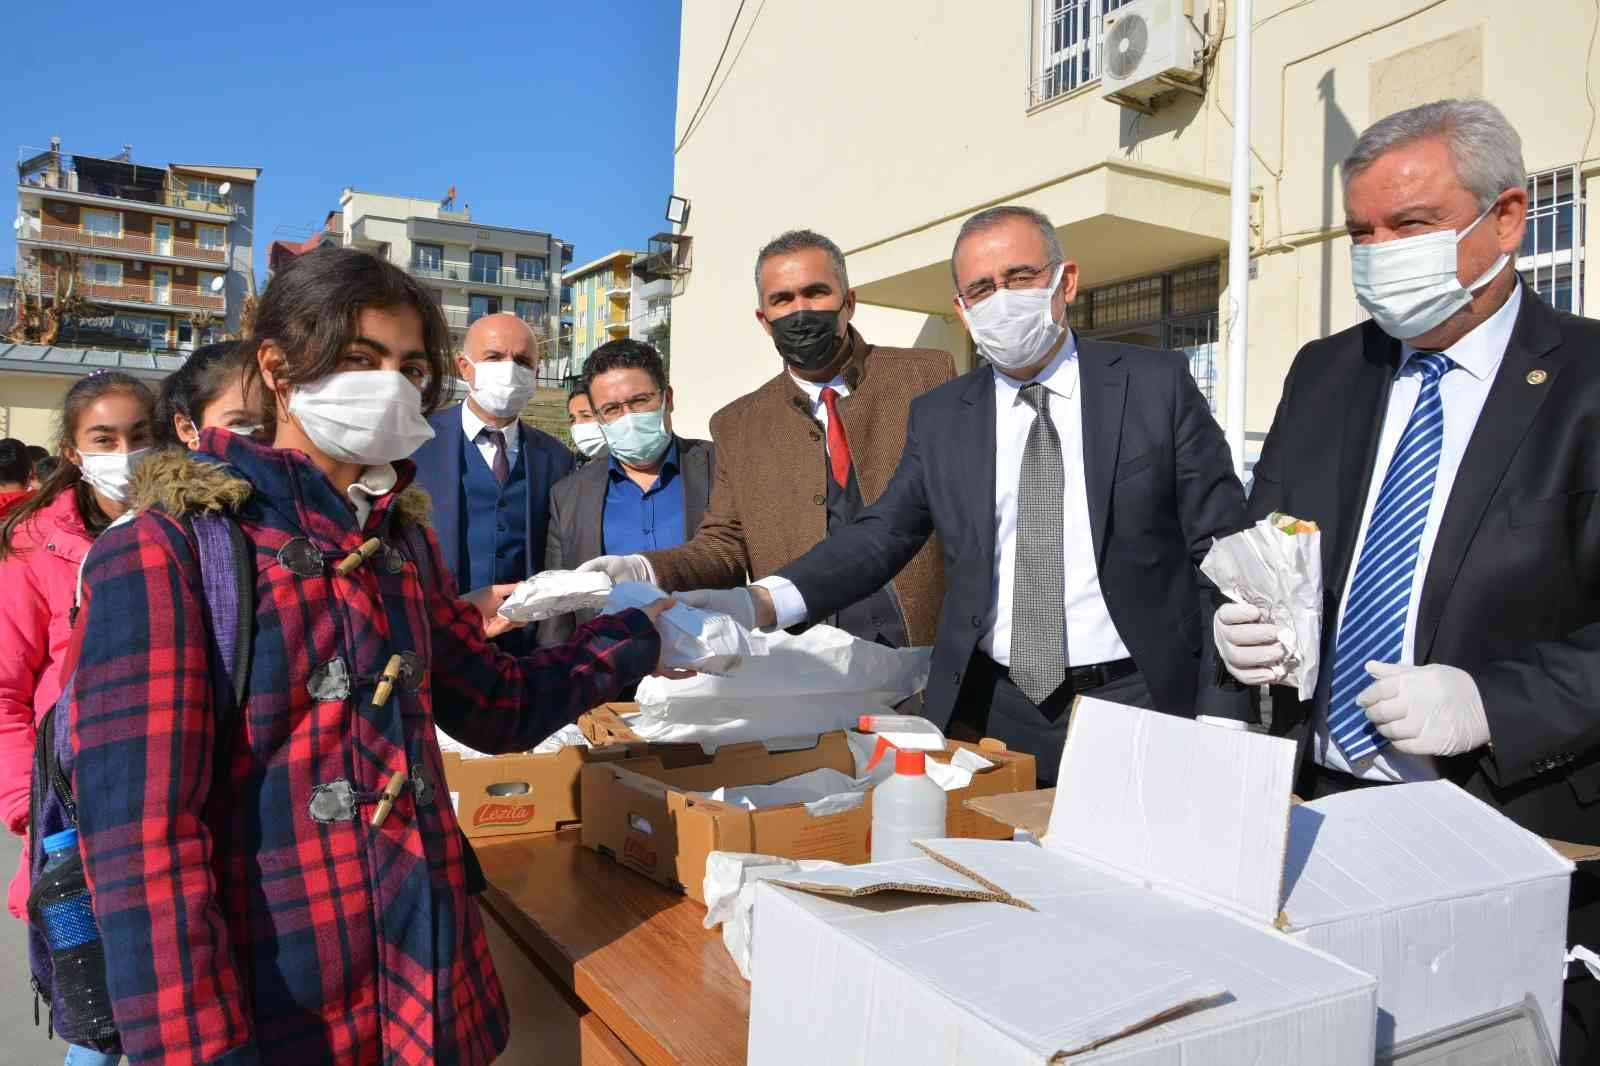 Aydın’da öğrencilere balık ekmek dağıtıldı #aydin